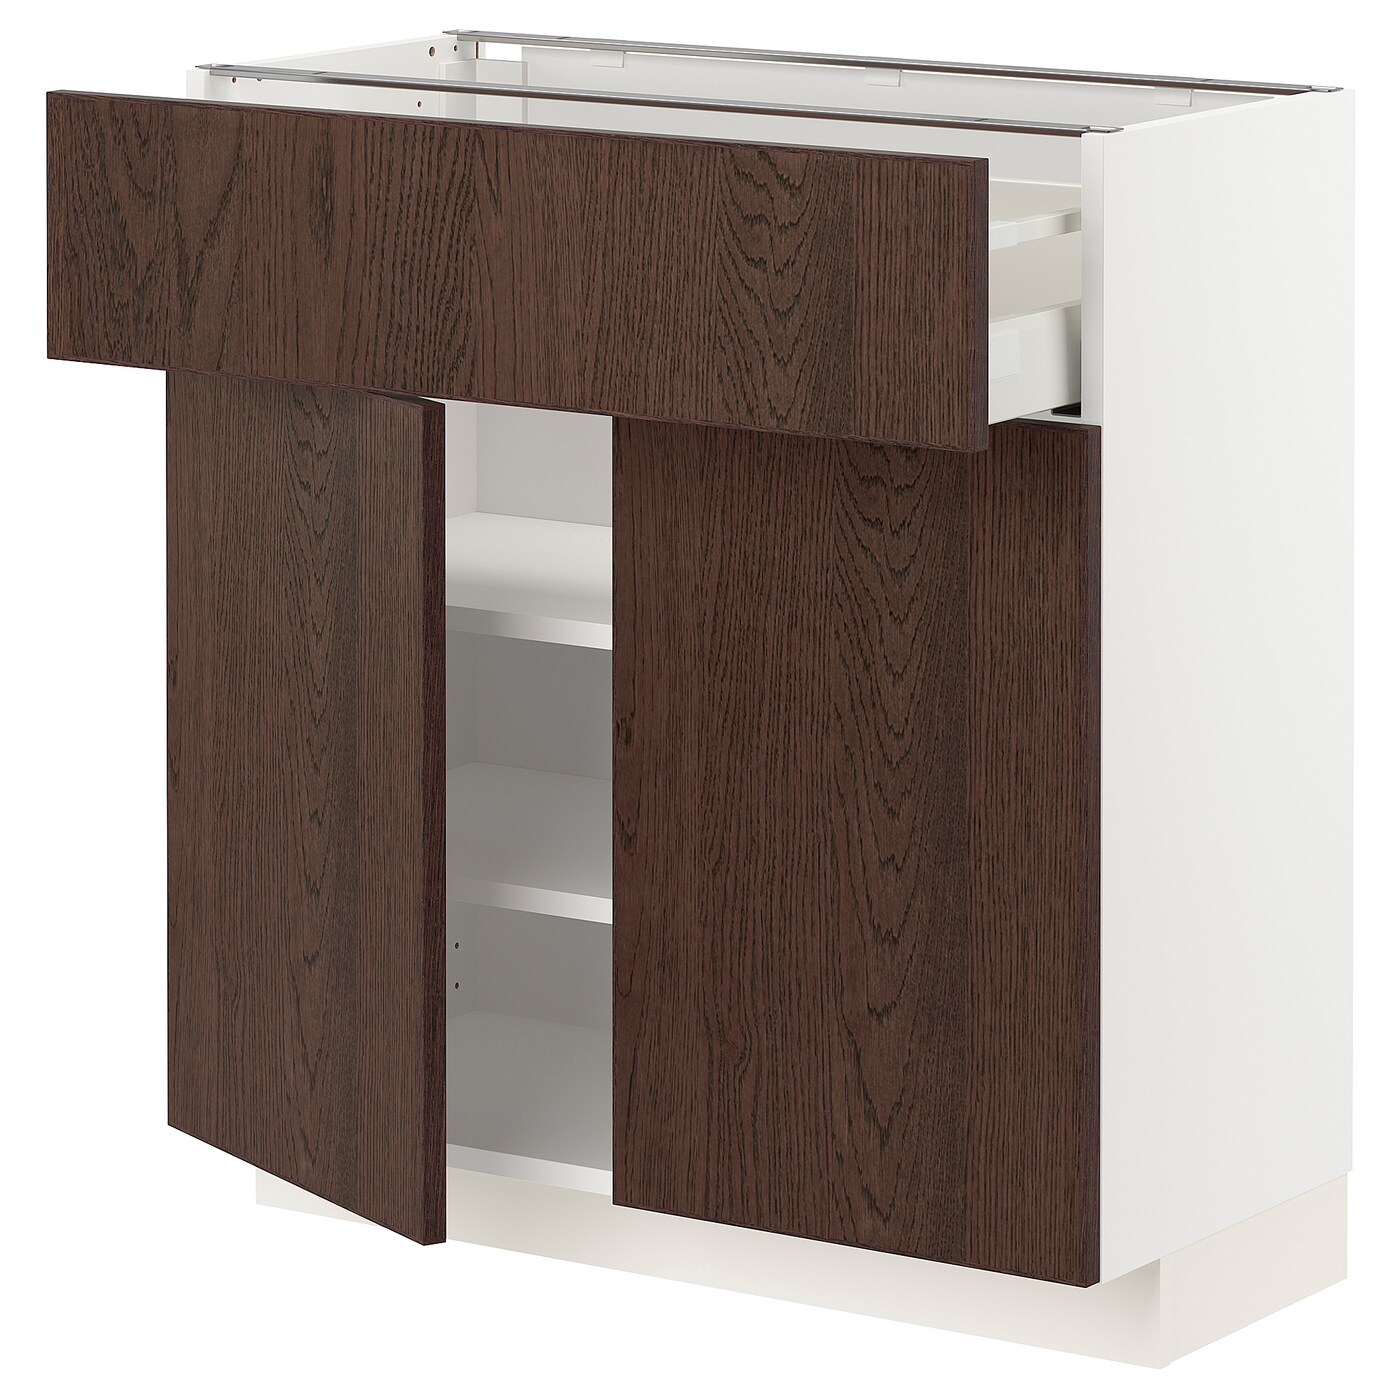 Напольный кухонный шкаф  - IKEA METOD MAXIMERA, 80x37x80см, белый/коричневый, МЕТОД МАКСИМЕРА ИКЕА